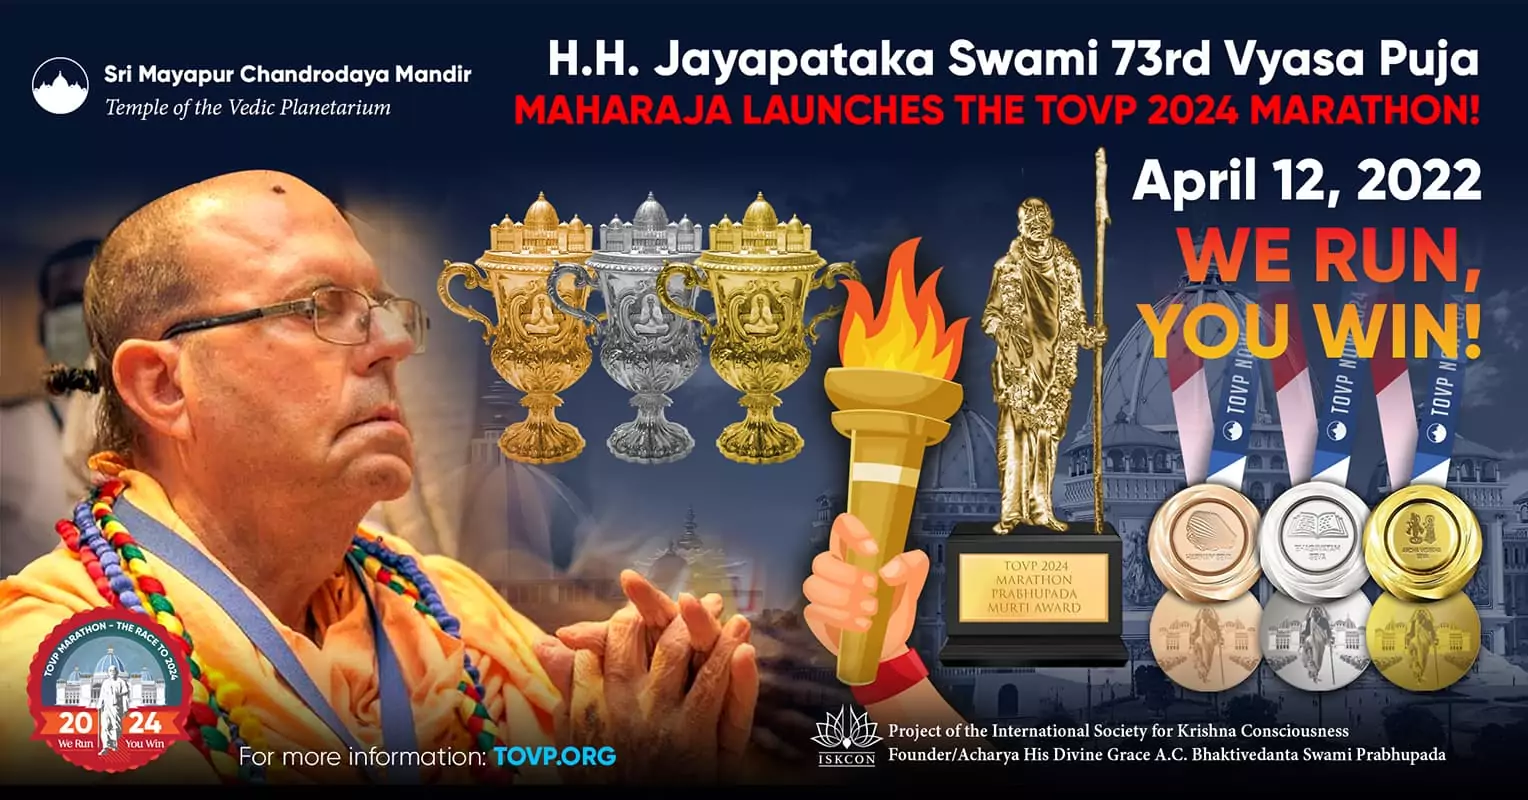 Его Высочество Джаяпатака Свами отмечает официальный запуск марафона ХВП 2024 в день празднования 73-й Вьяса-пуджи